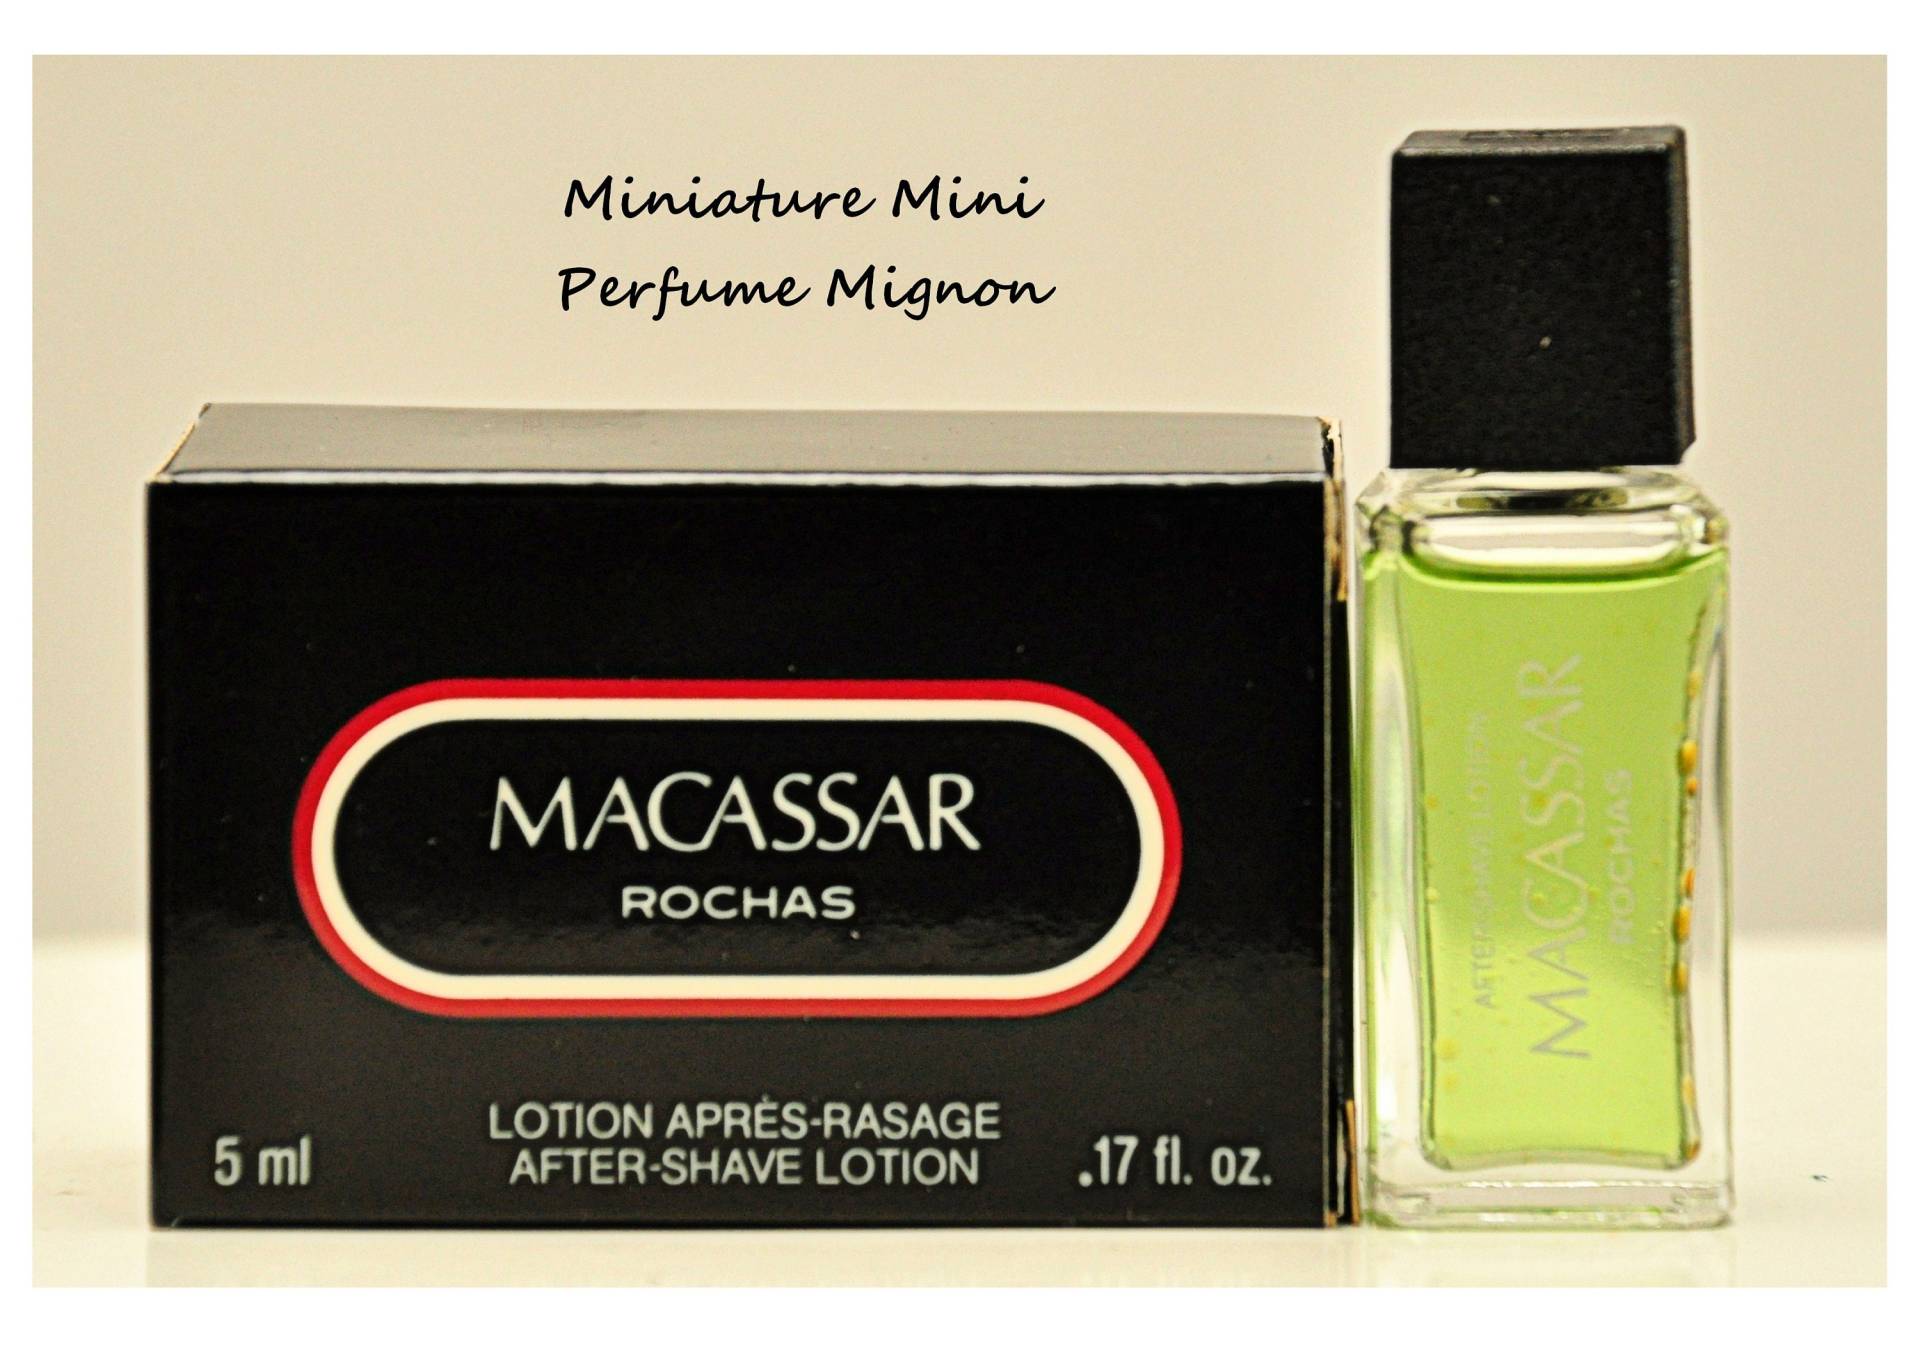 Rochas Macassar Lotion Après-Rasage 5Ml Miniatur Splash Non Spray Herrenparfüm Sehr Selten Vintage 1980 von Etsy - YourVintagePerfume